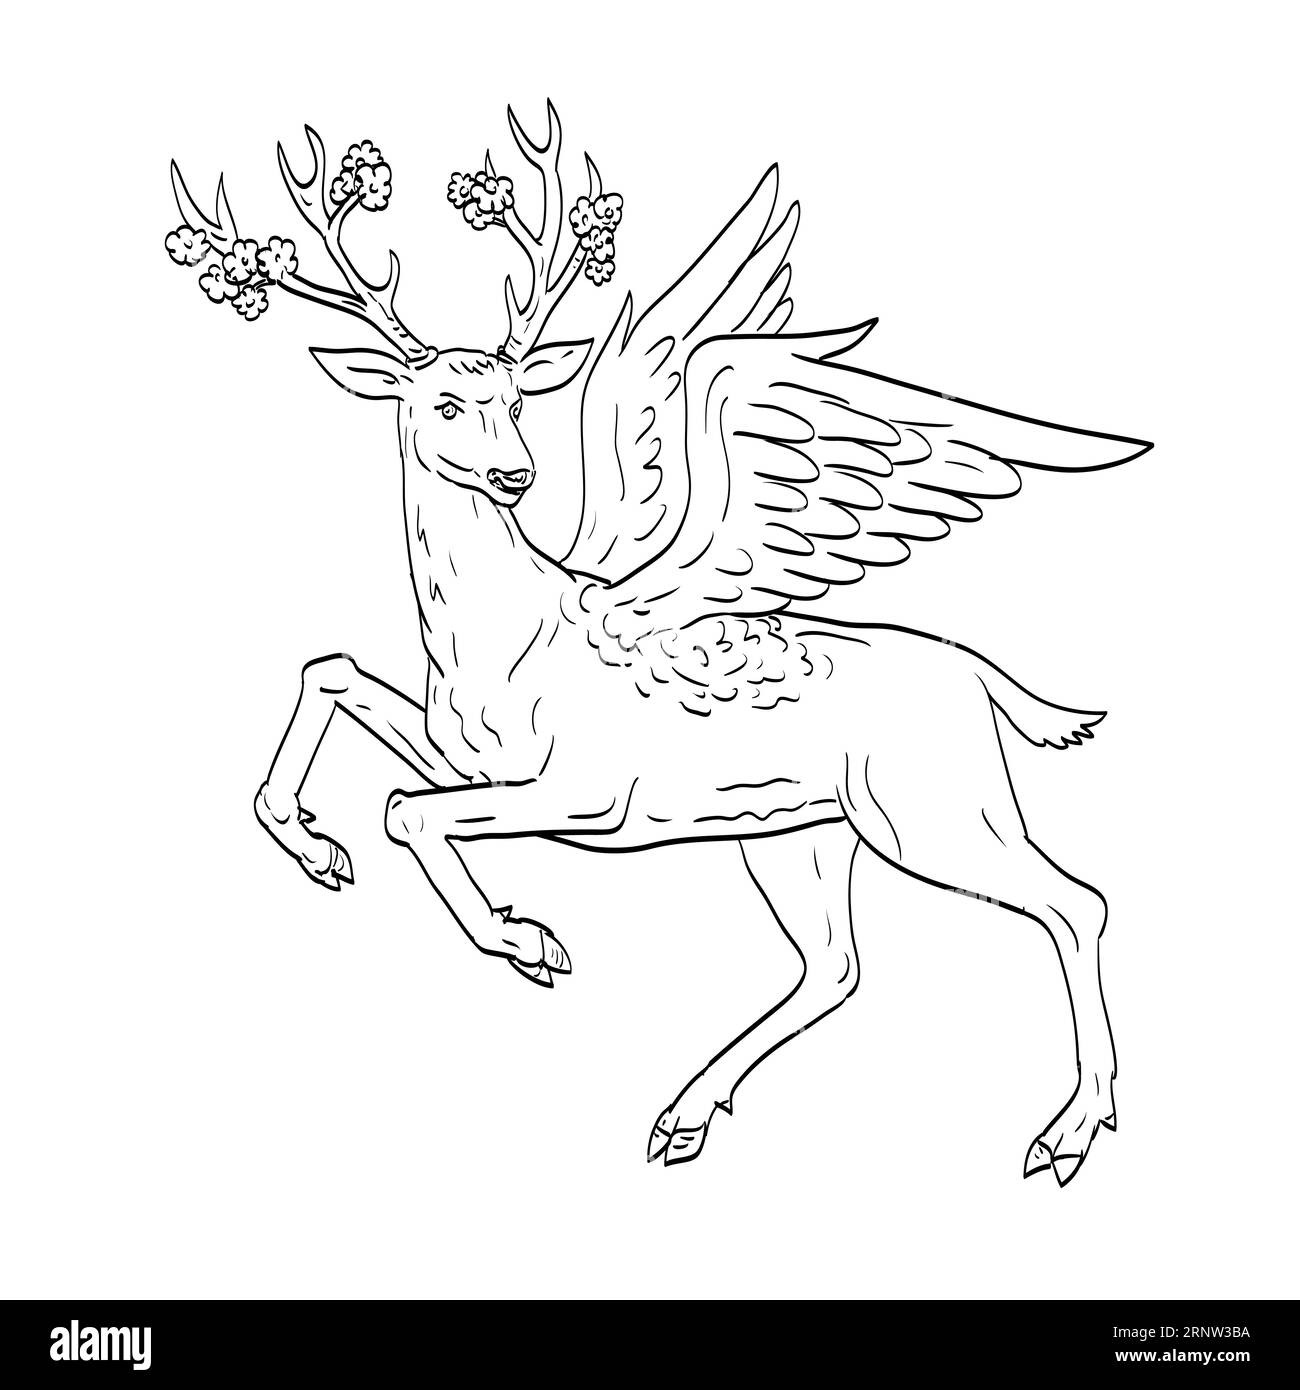 Disegno illustrativo di uno Snawfus, nel folklore dell'Arkansas, un cervo bianco con rami di prugna o legno di prugna in piena fioritura per palchi fatti in medieva Foto Stock